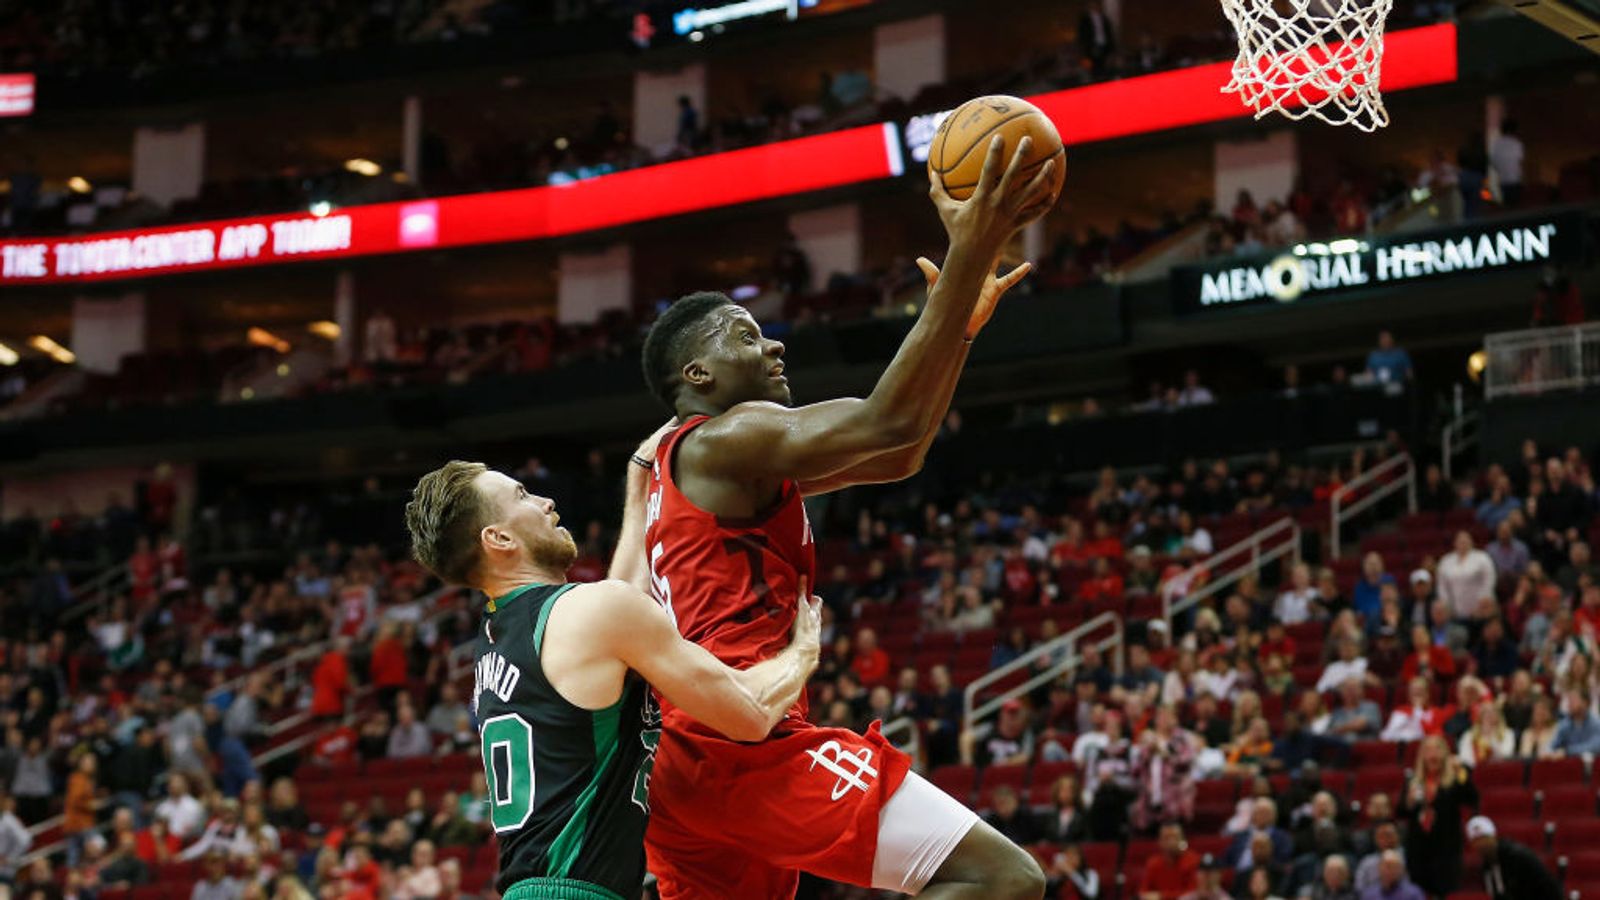 Houston Rockets extend Clint Capela - ESPN